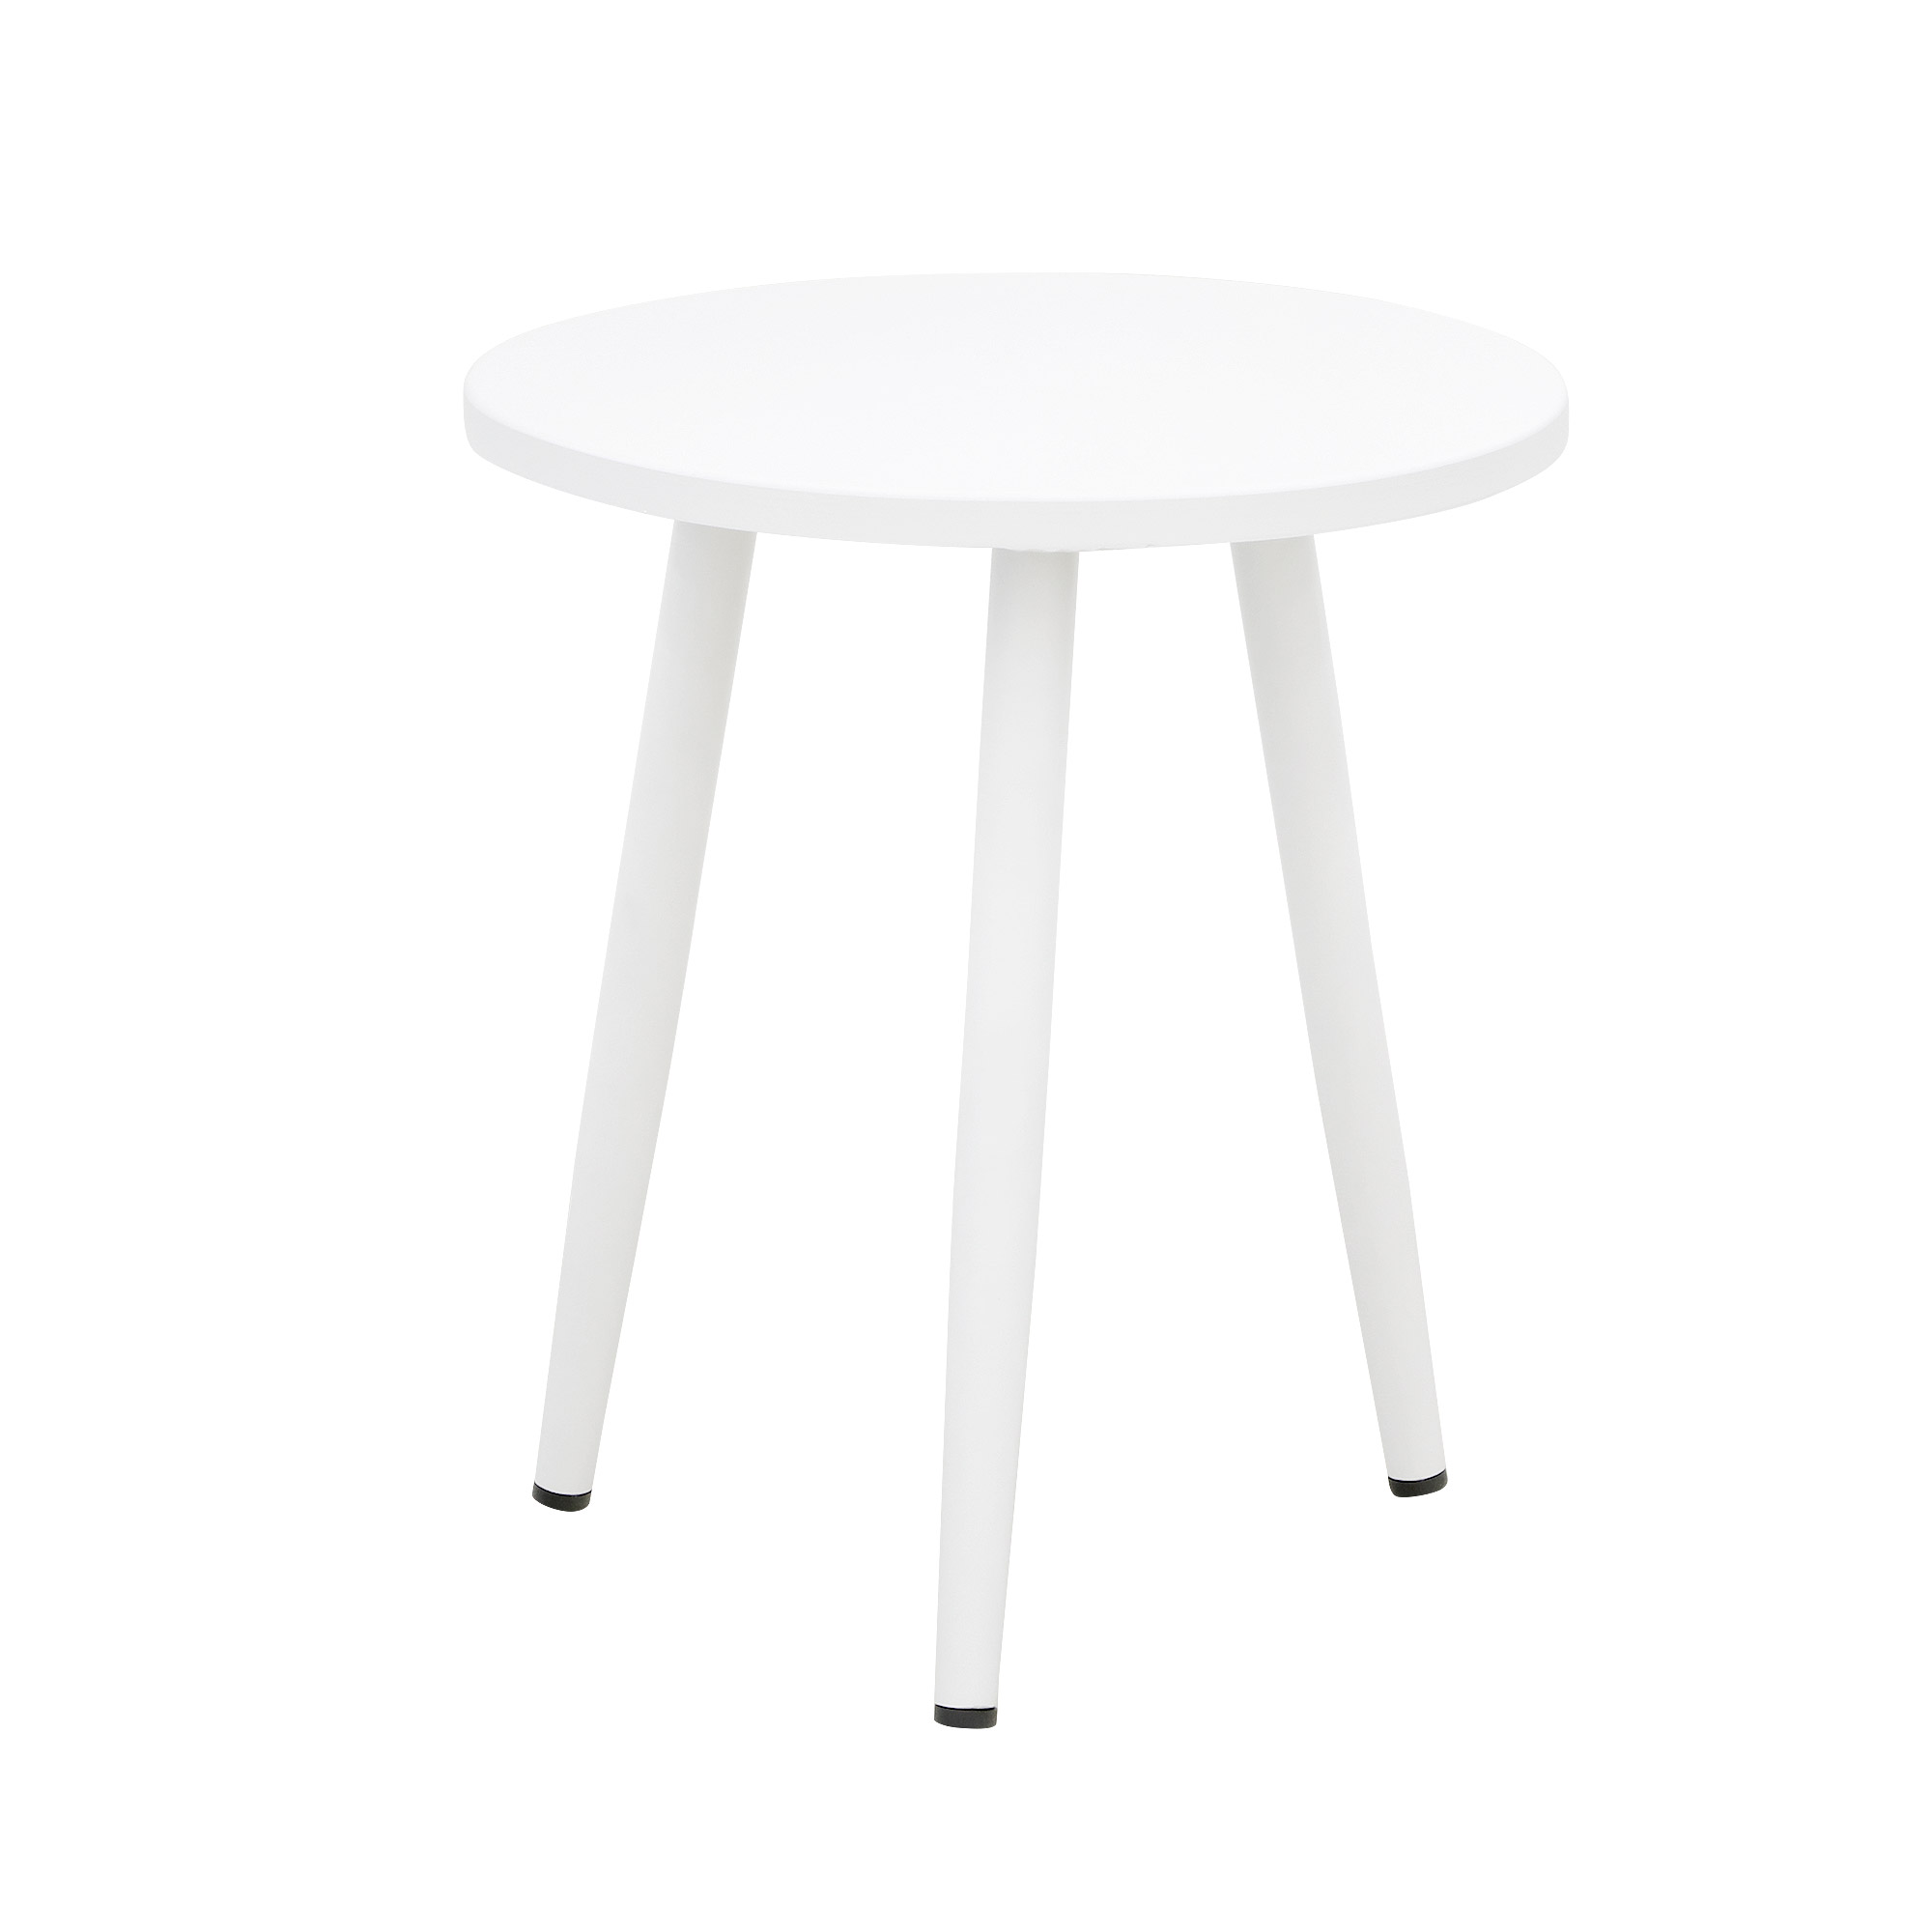 Комплект мебели Obt light 2 кресла+столик, цвет белый, размер 59х64х78 см - фото 2